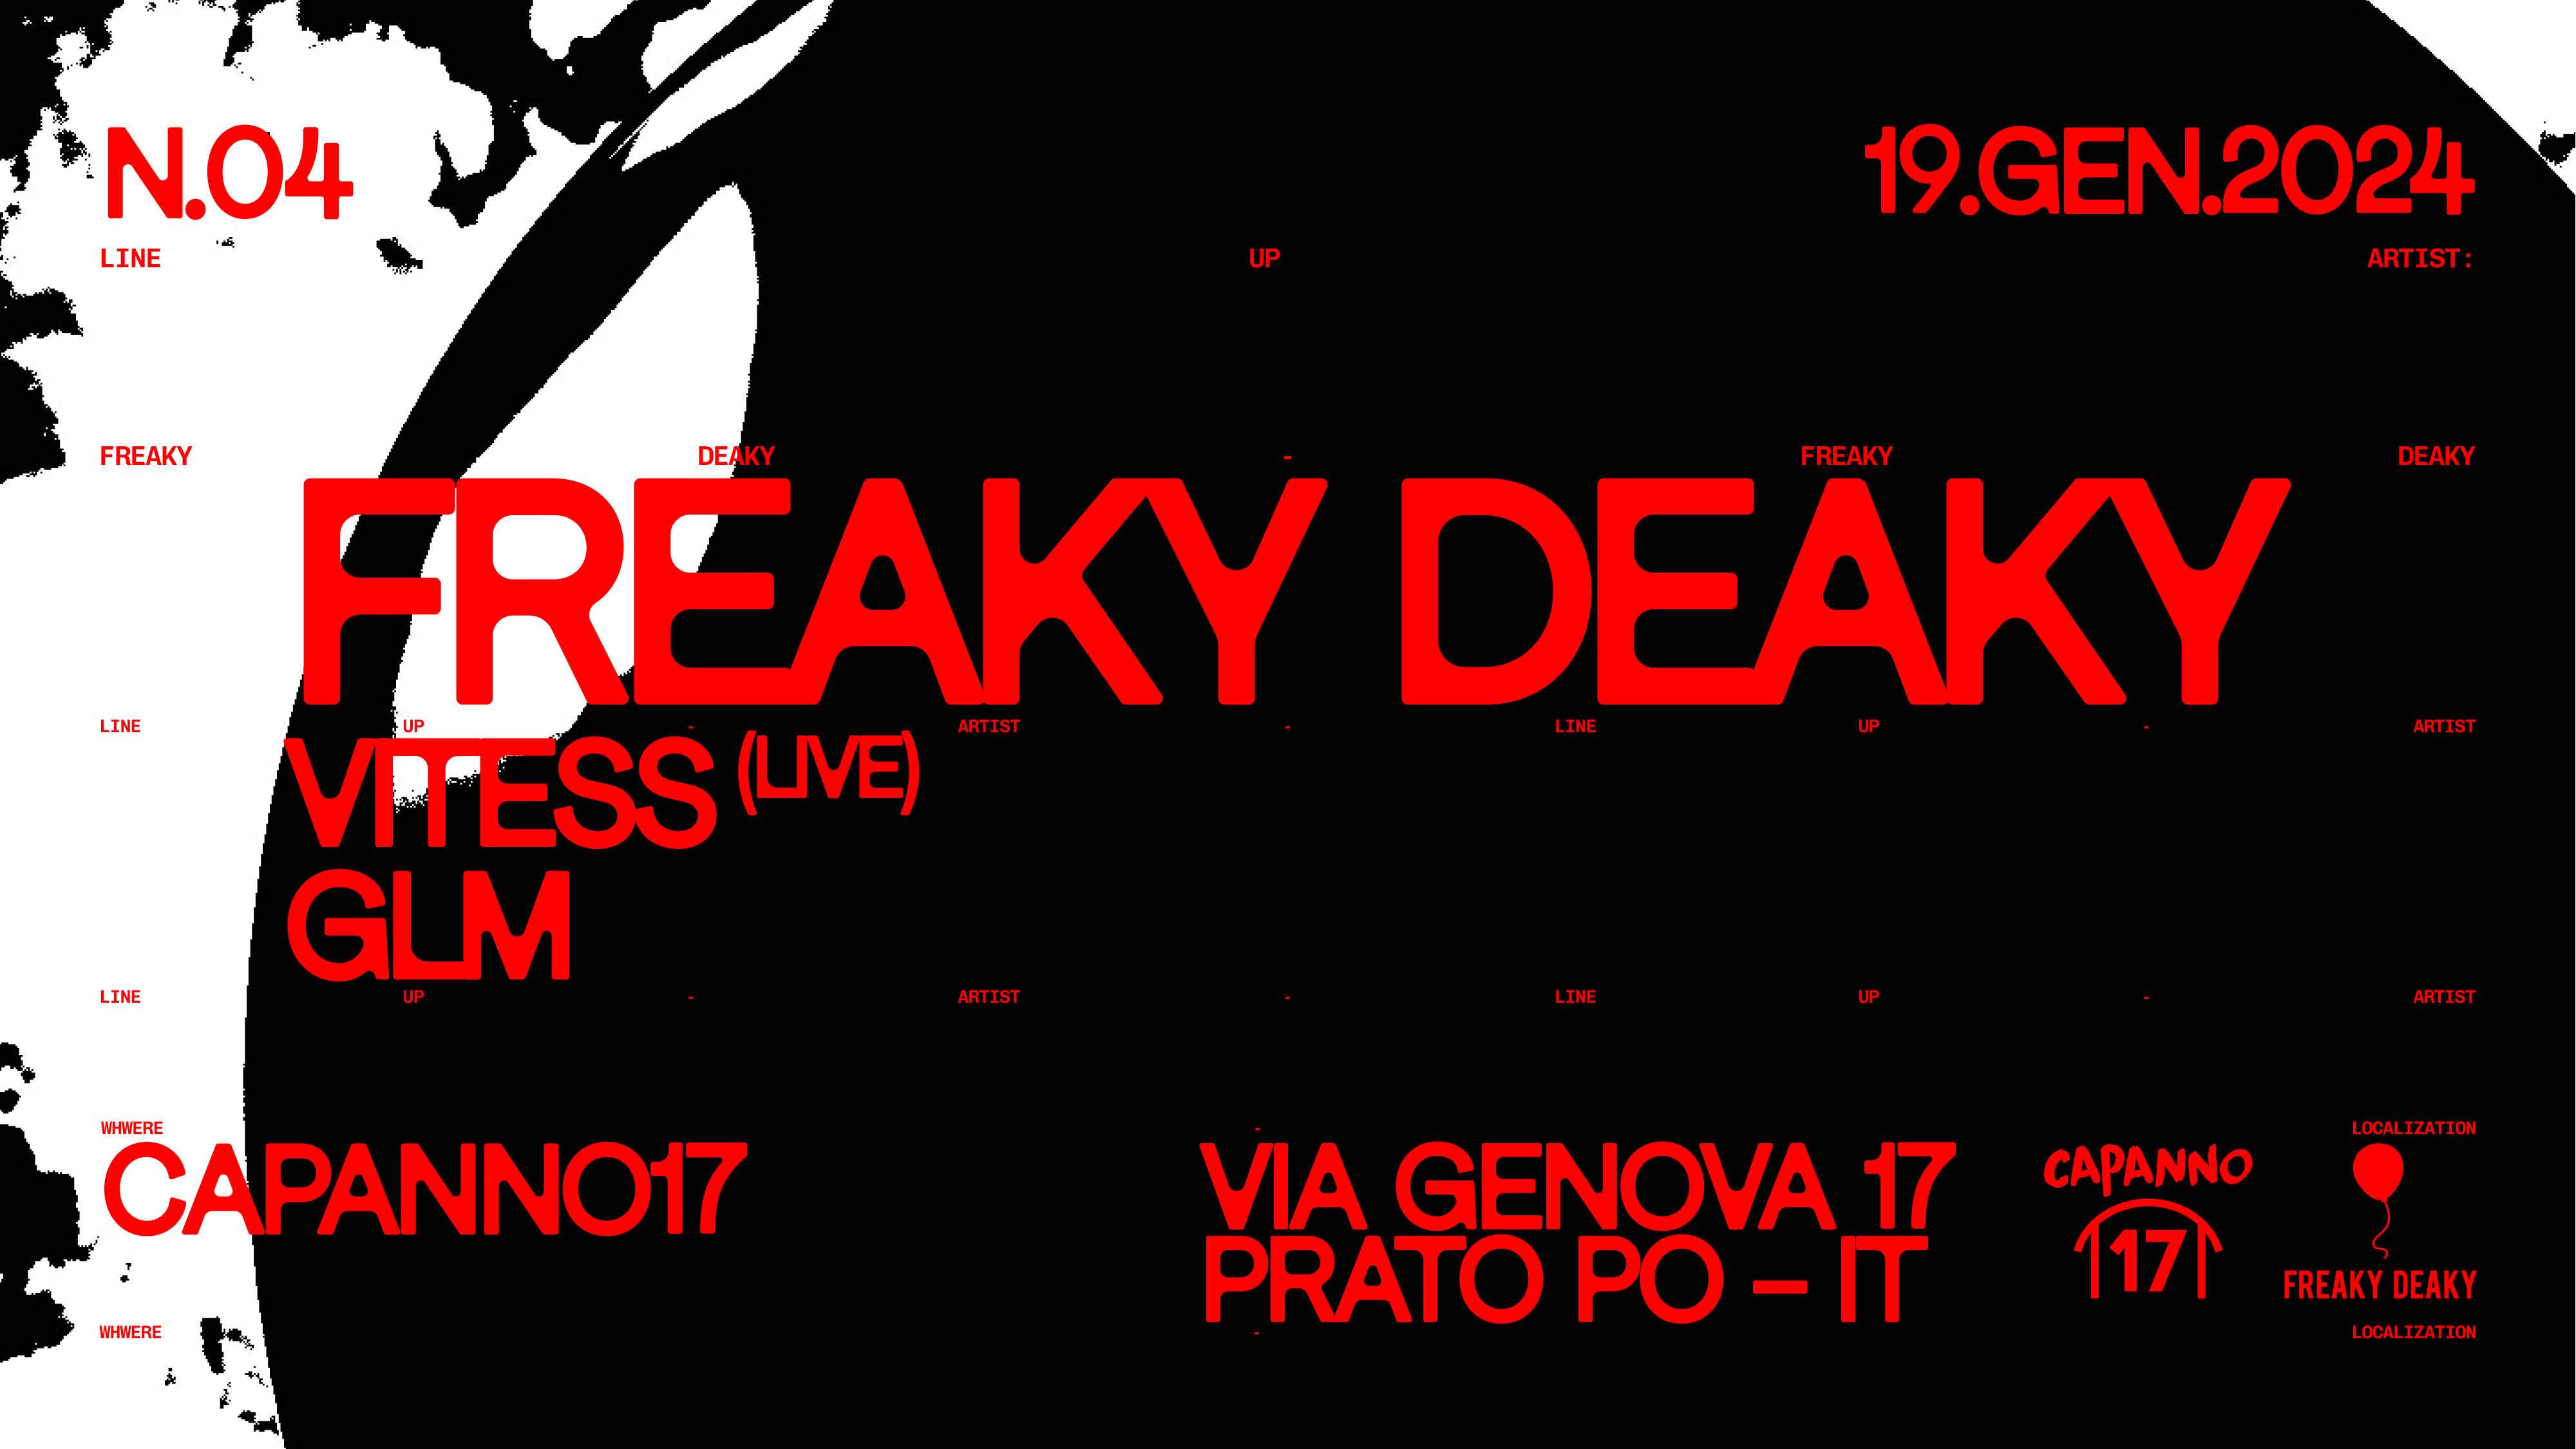 Freaky Deaky with Vitess(Live) - Glm - Página trasera